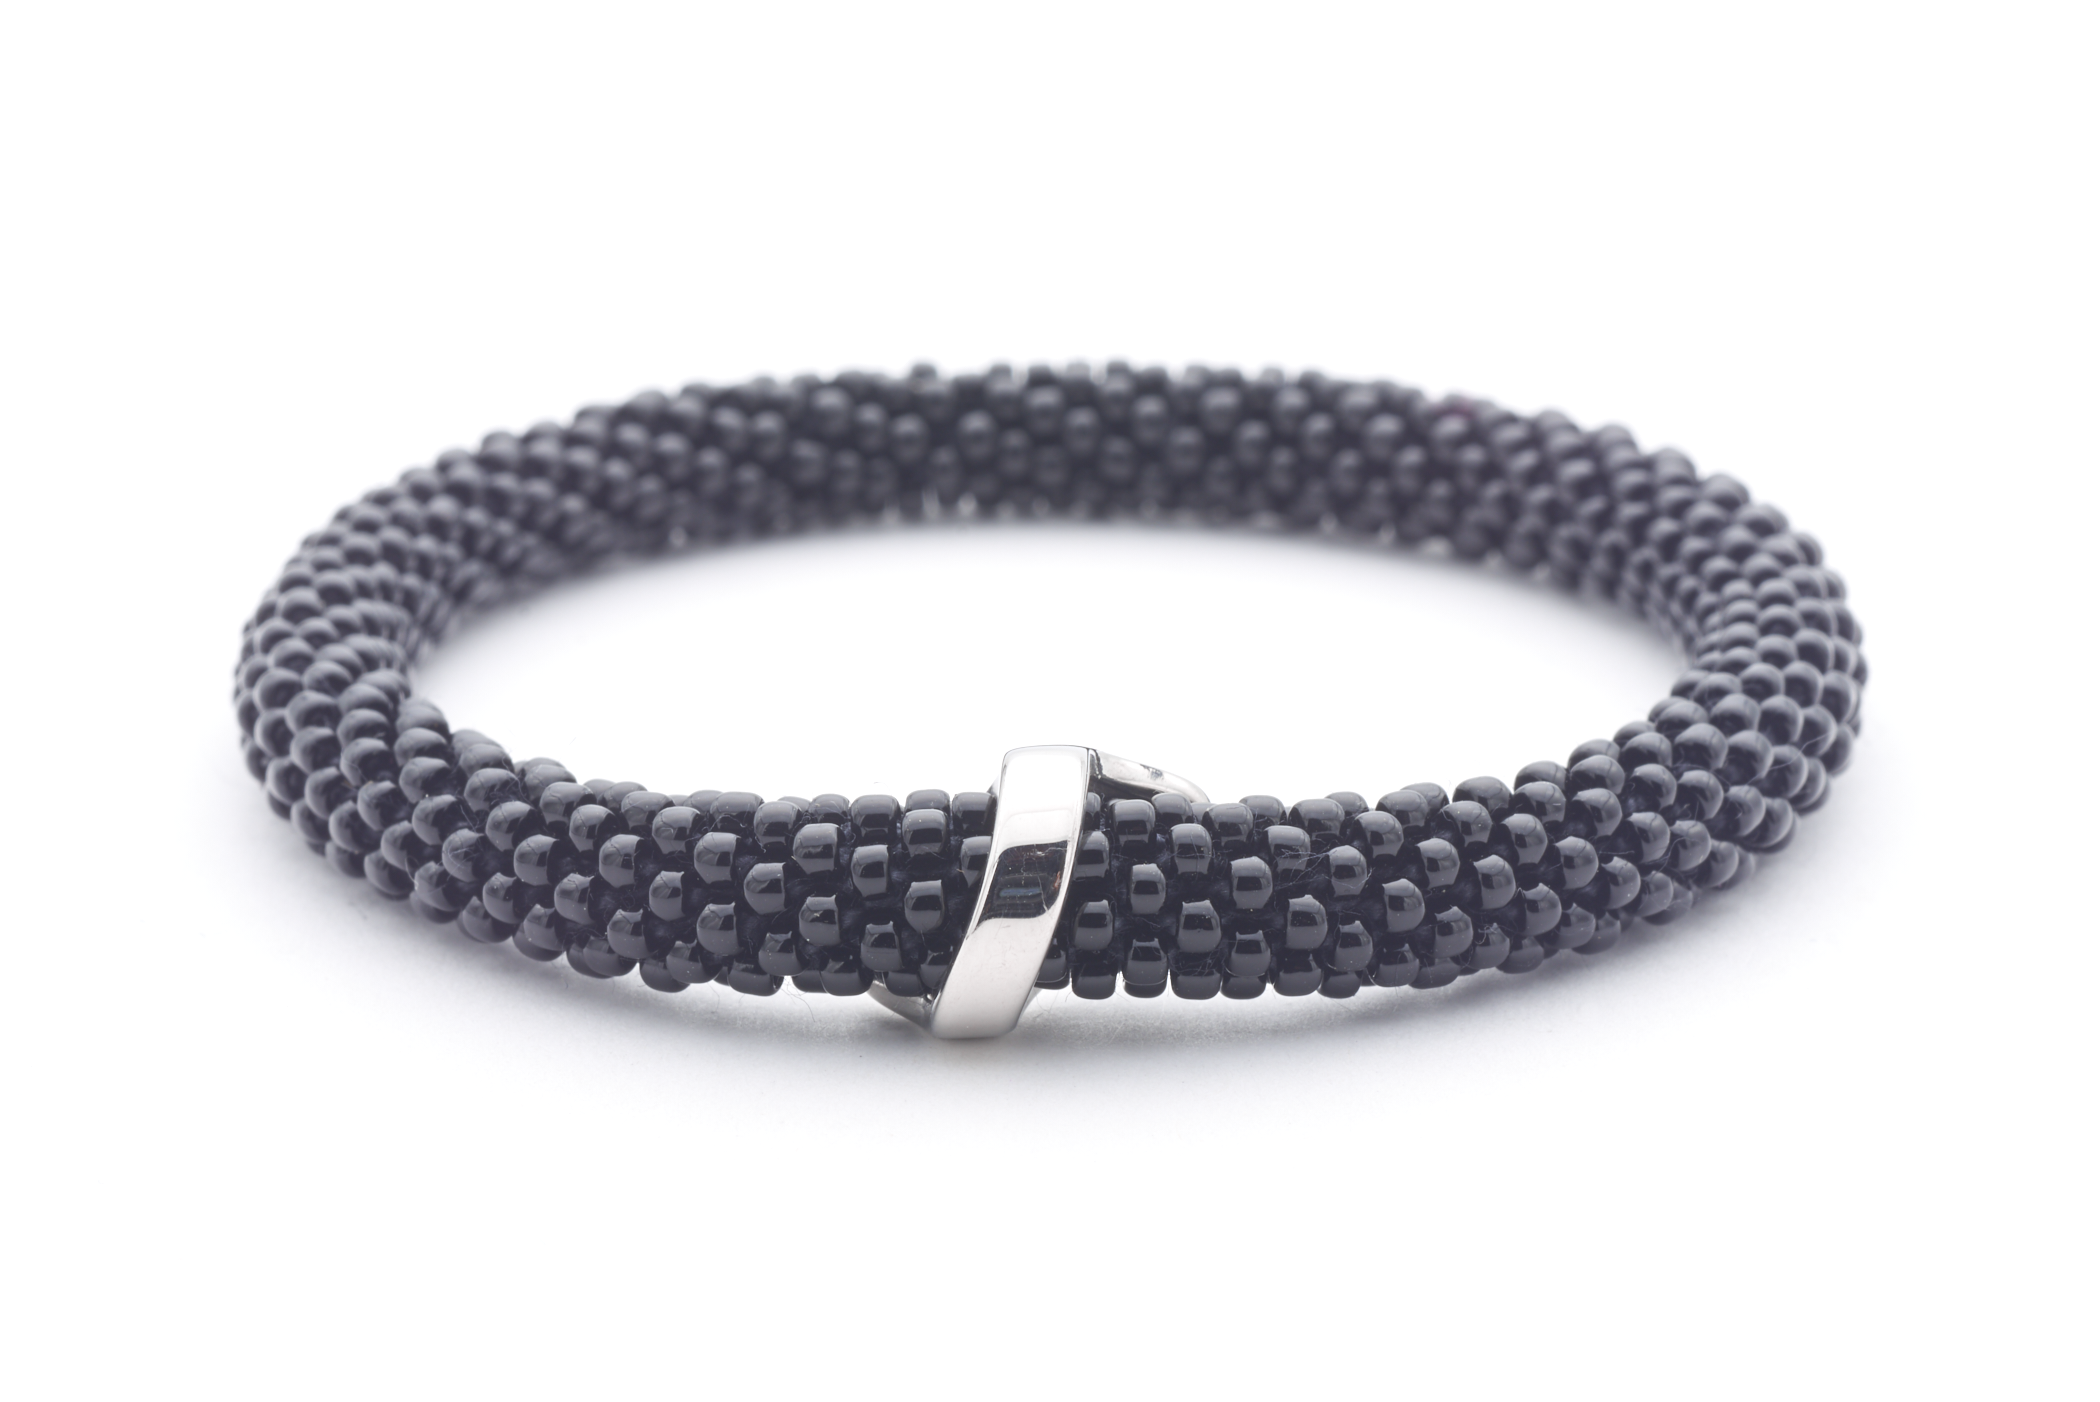 Sashka Co. Extended 8" Bracelet Black /w Silver Charm Friendship Charm Bracelet - Extended 8"